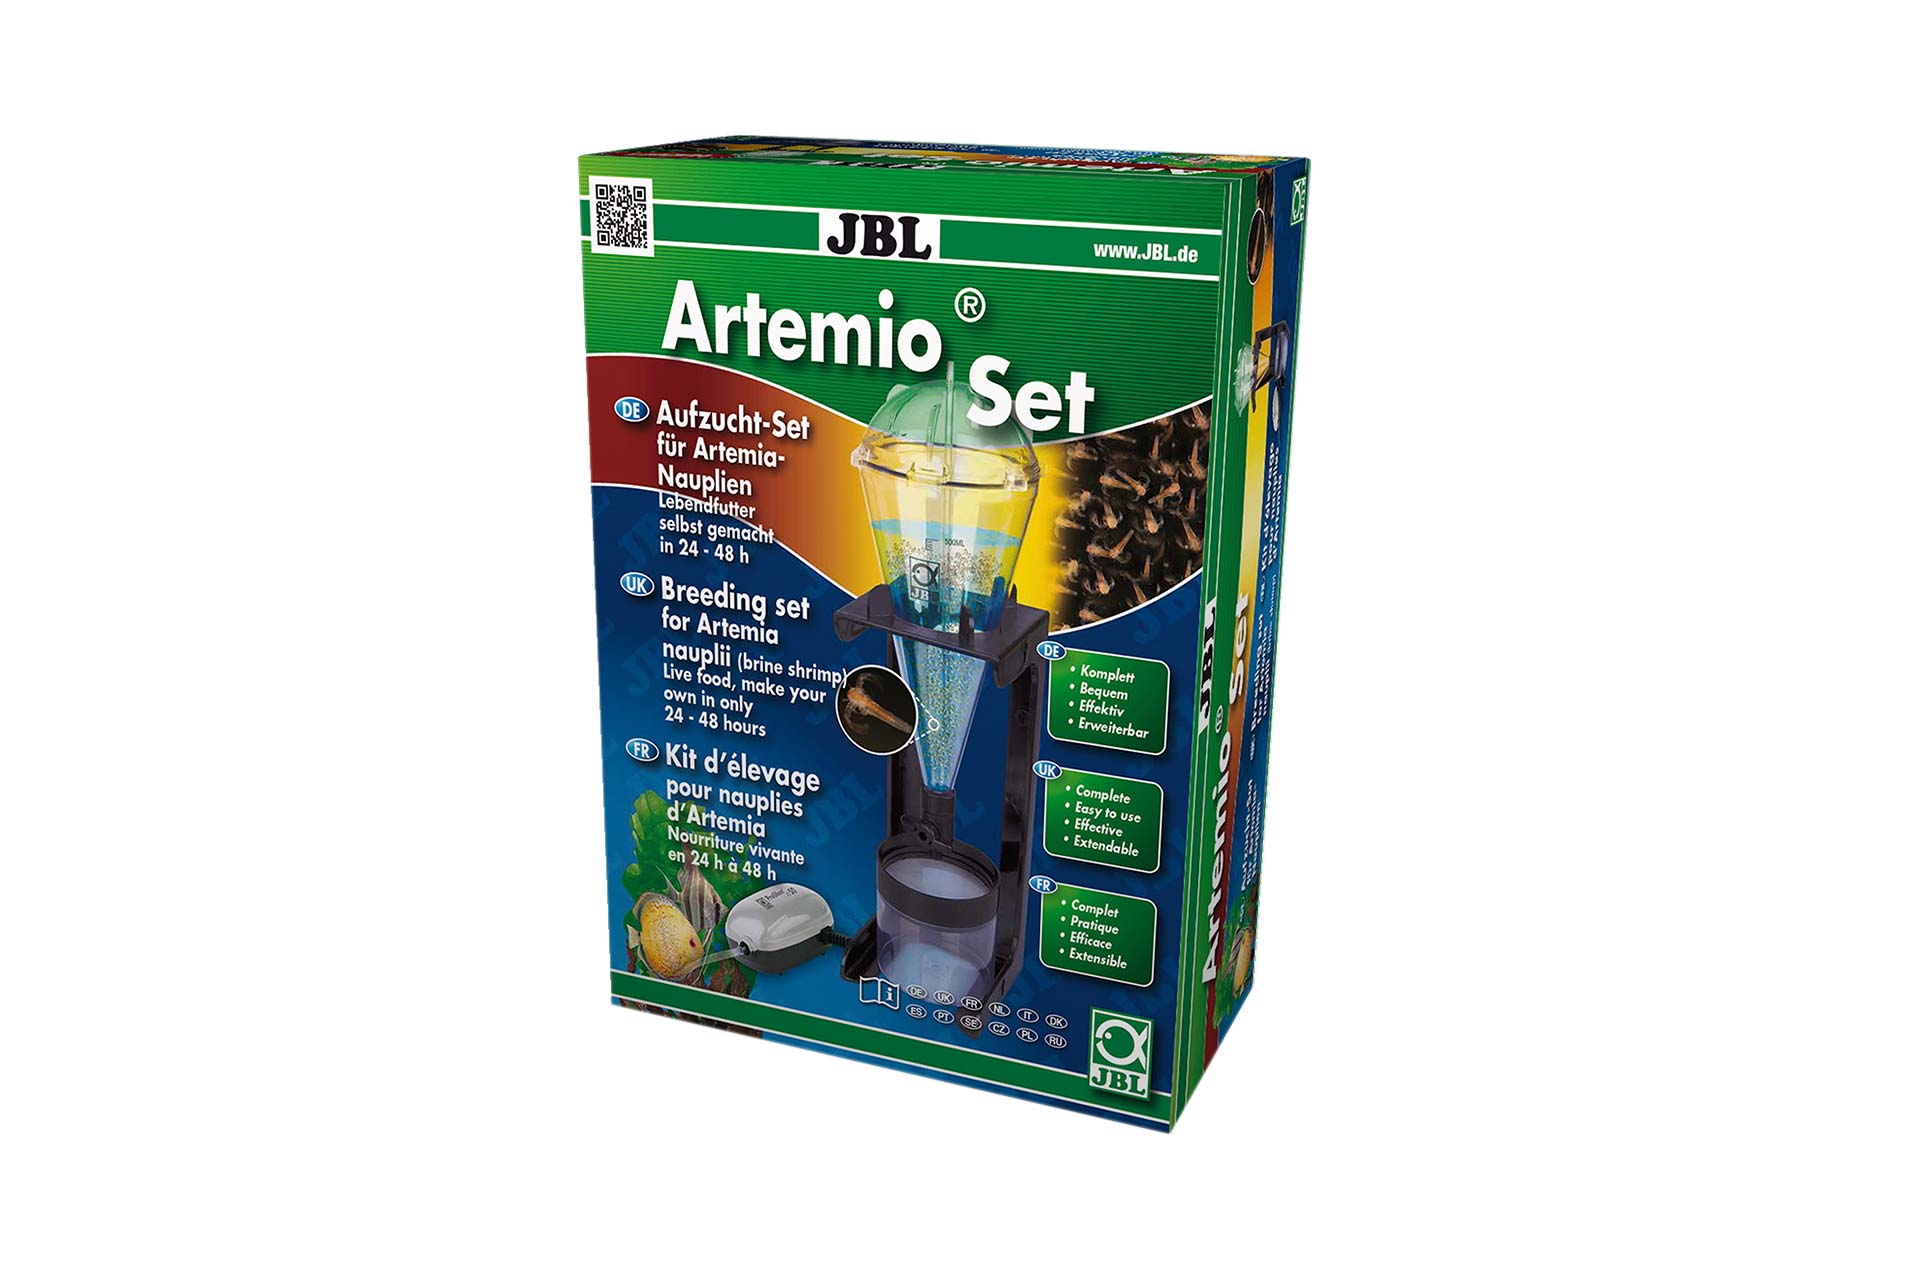 JBL ArtemioSet Aufzucht-Set für Artemia-Nauplien